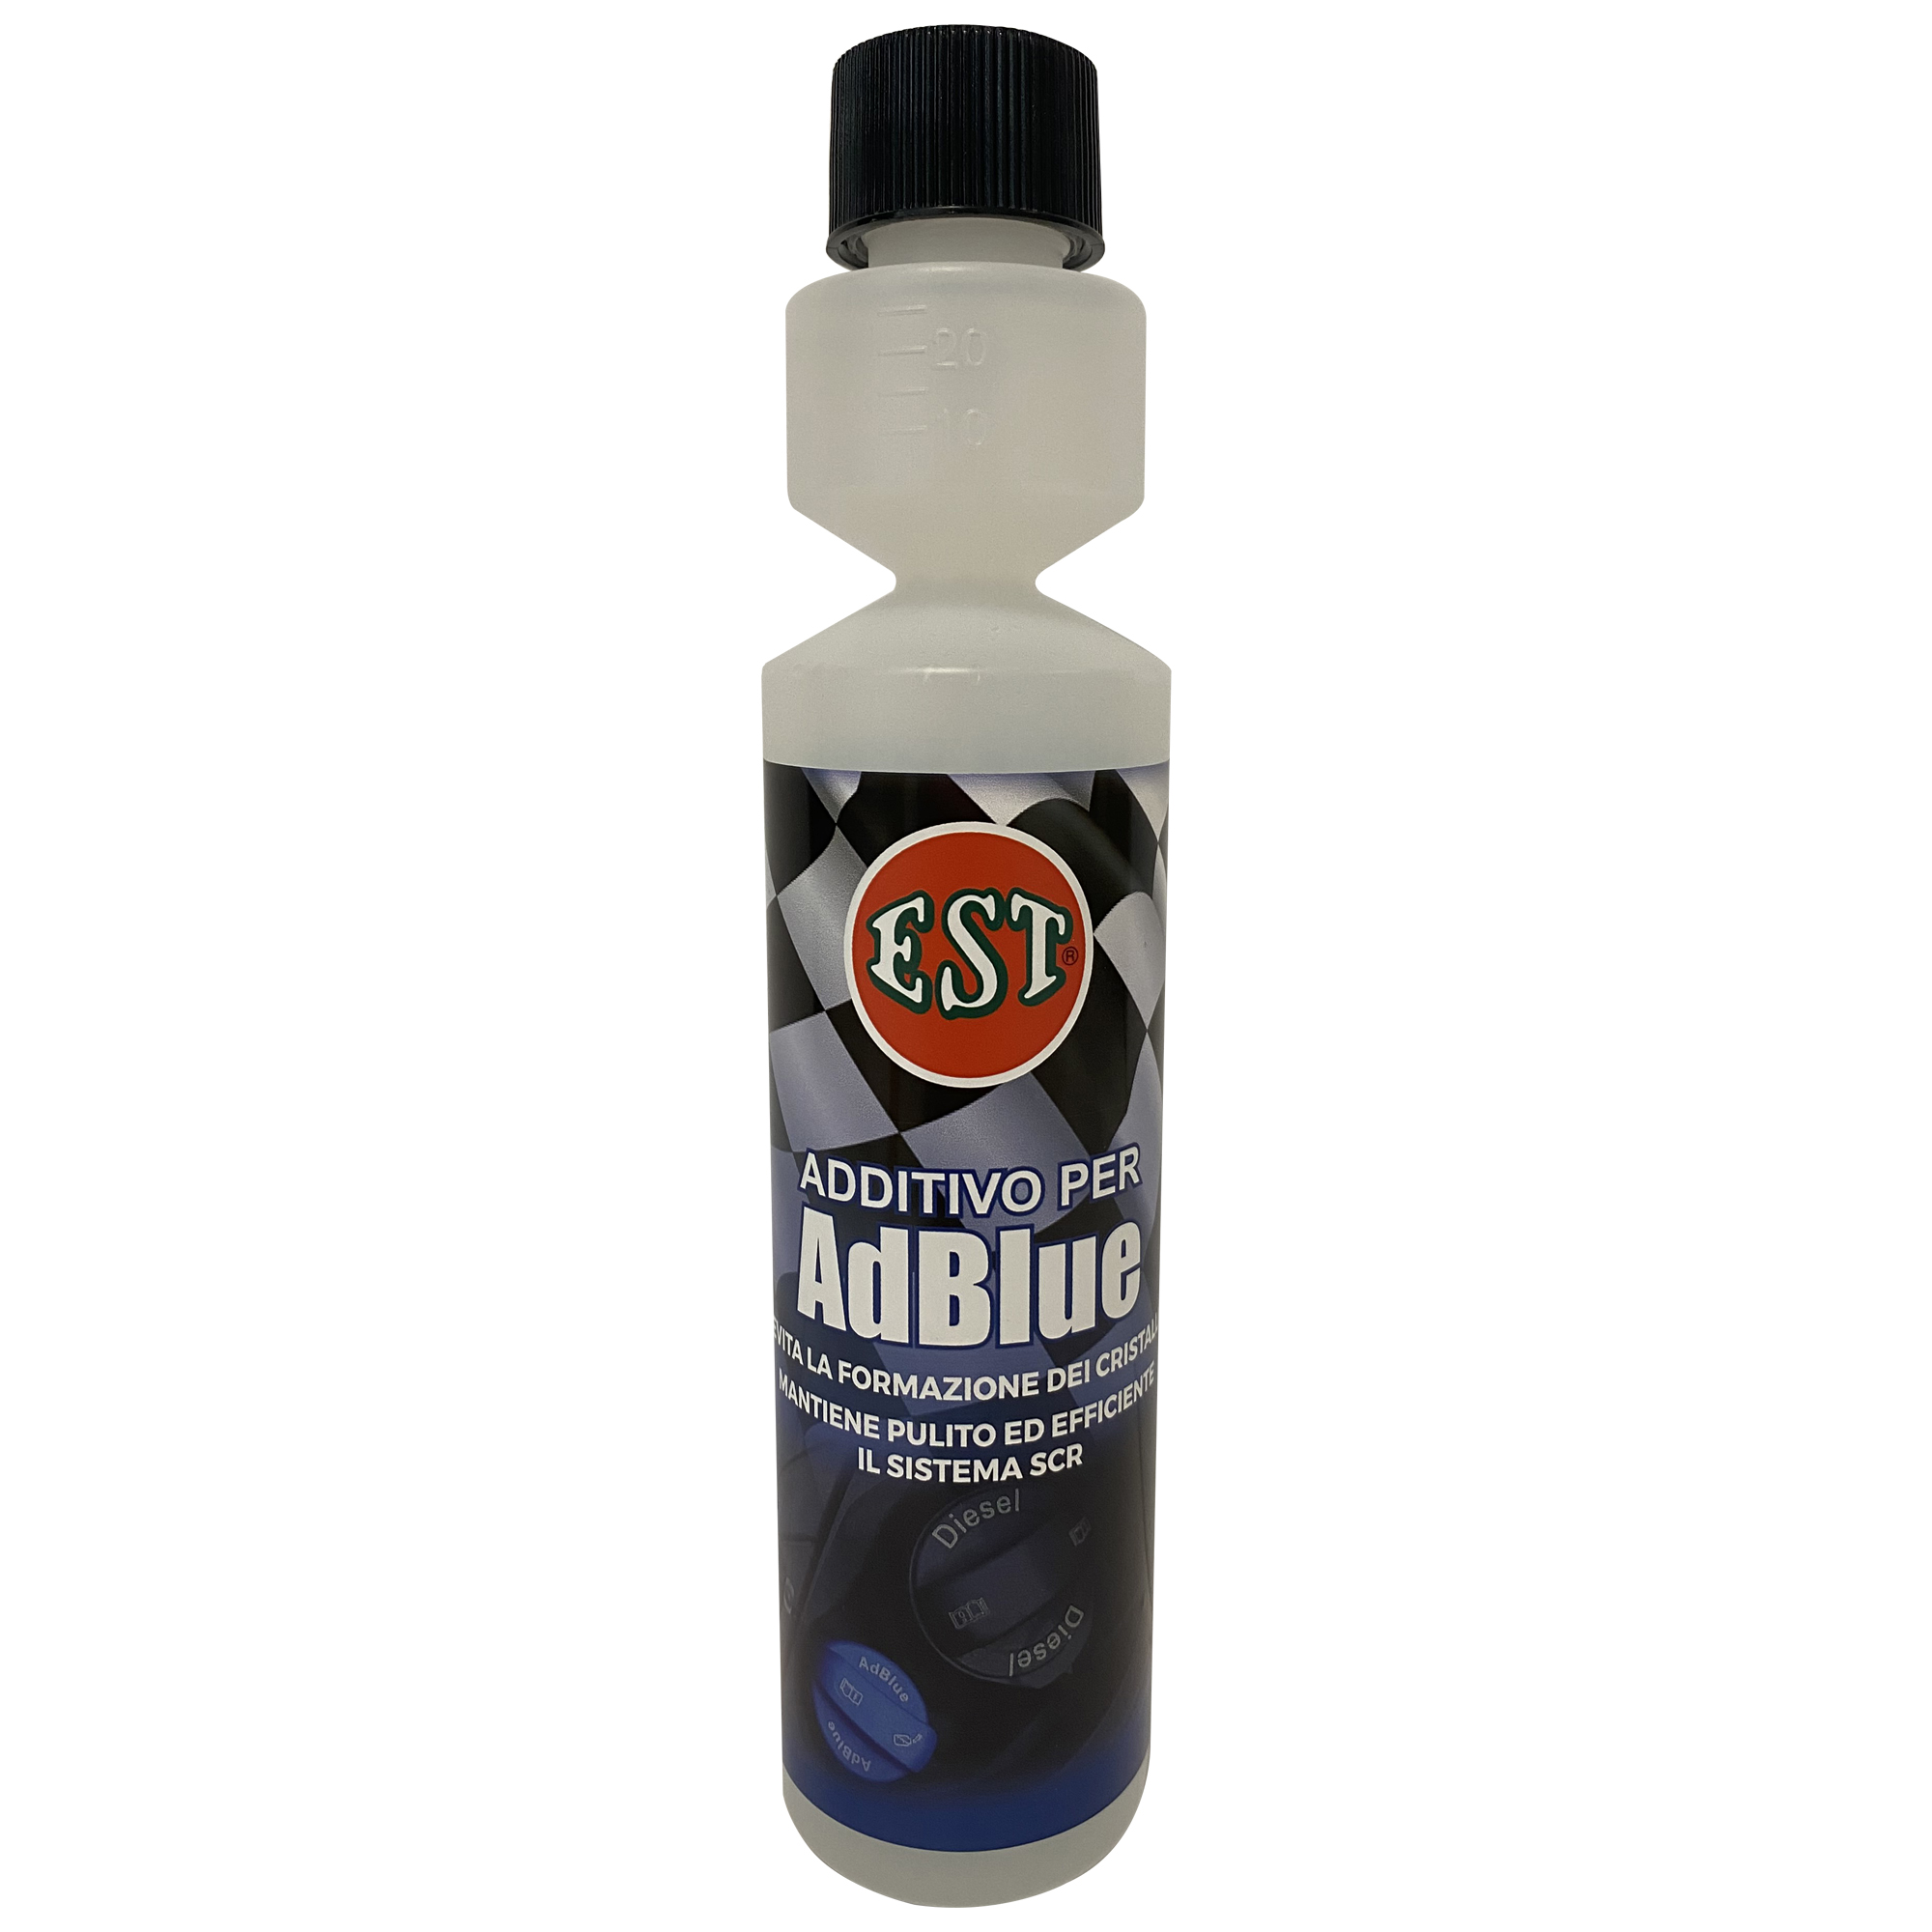 EST - Additive for AdBlue 250 ml – DAC Srl